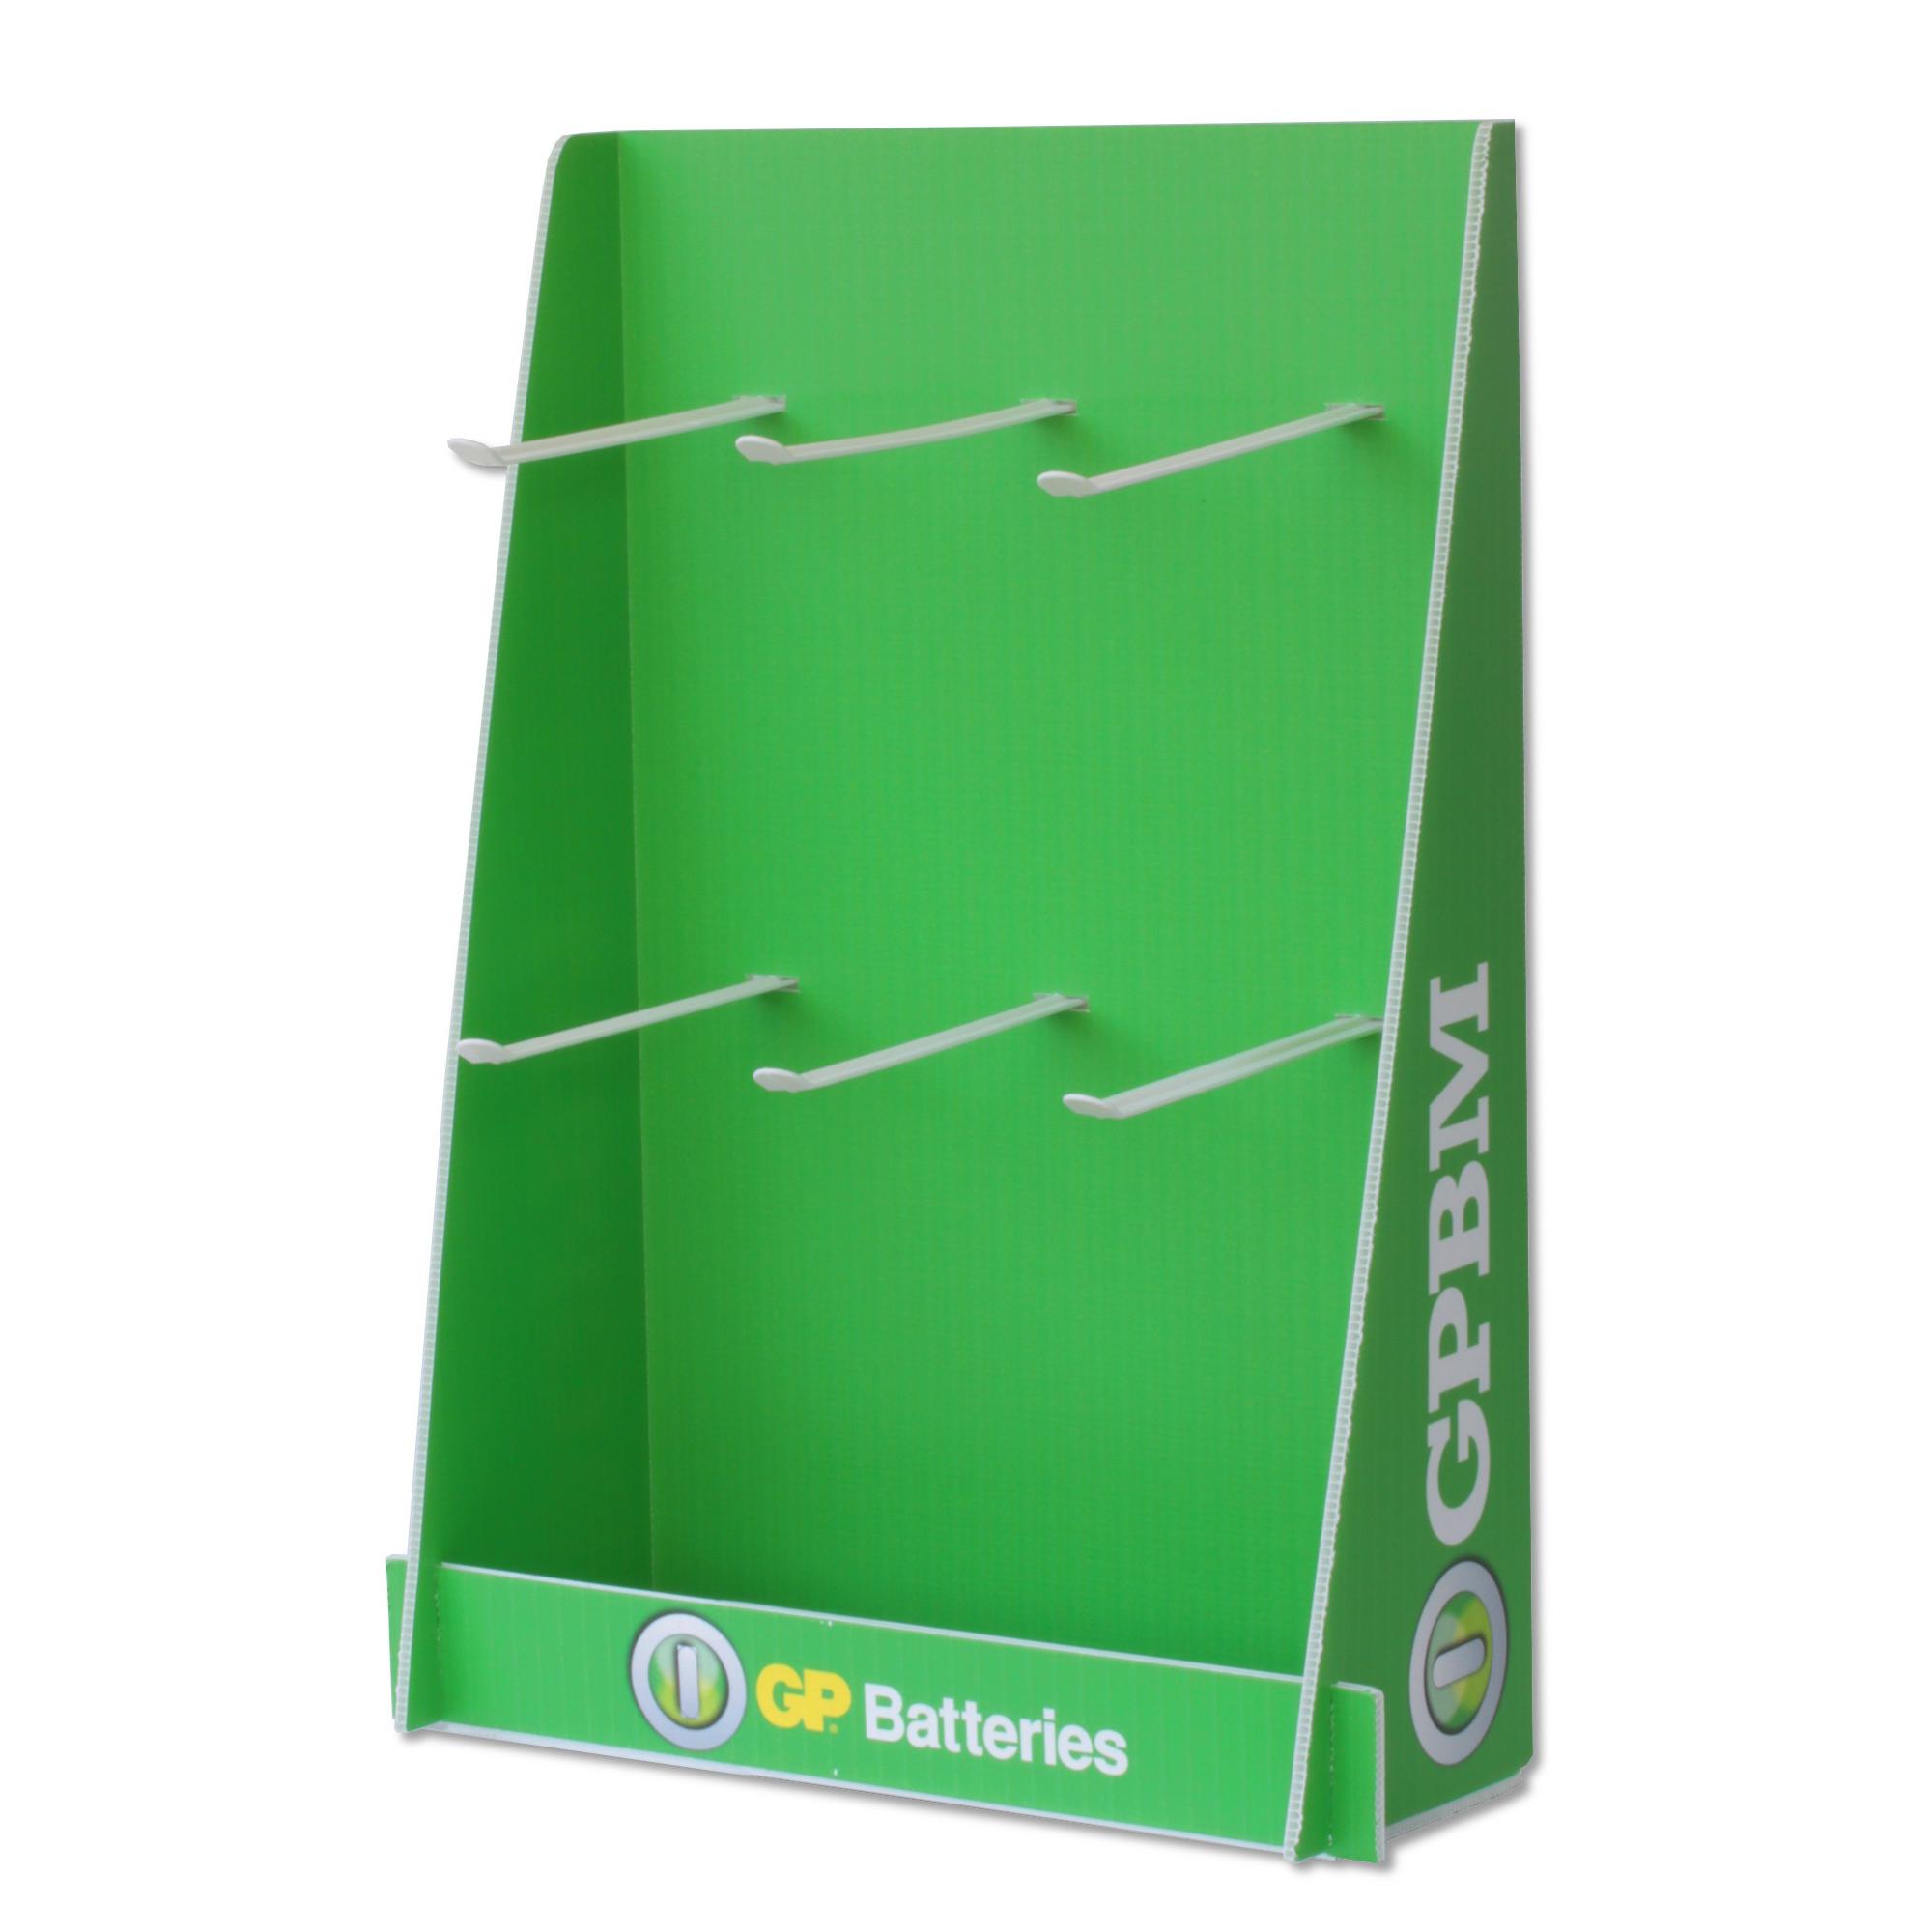 Espositore Stand da Banco in Plastica Batterie GP